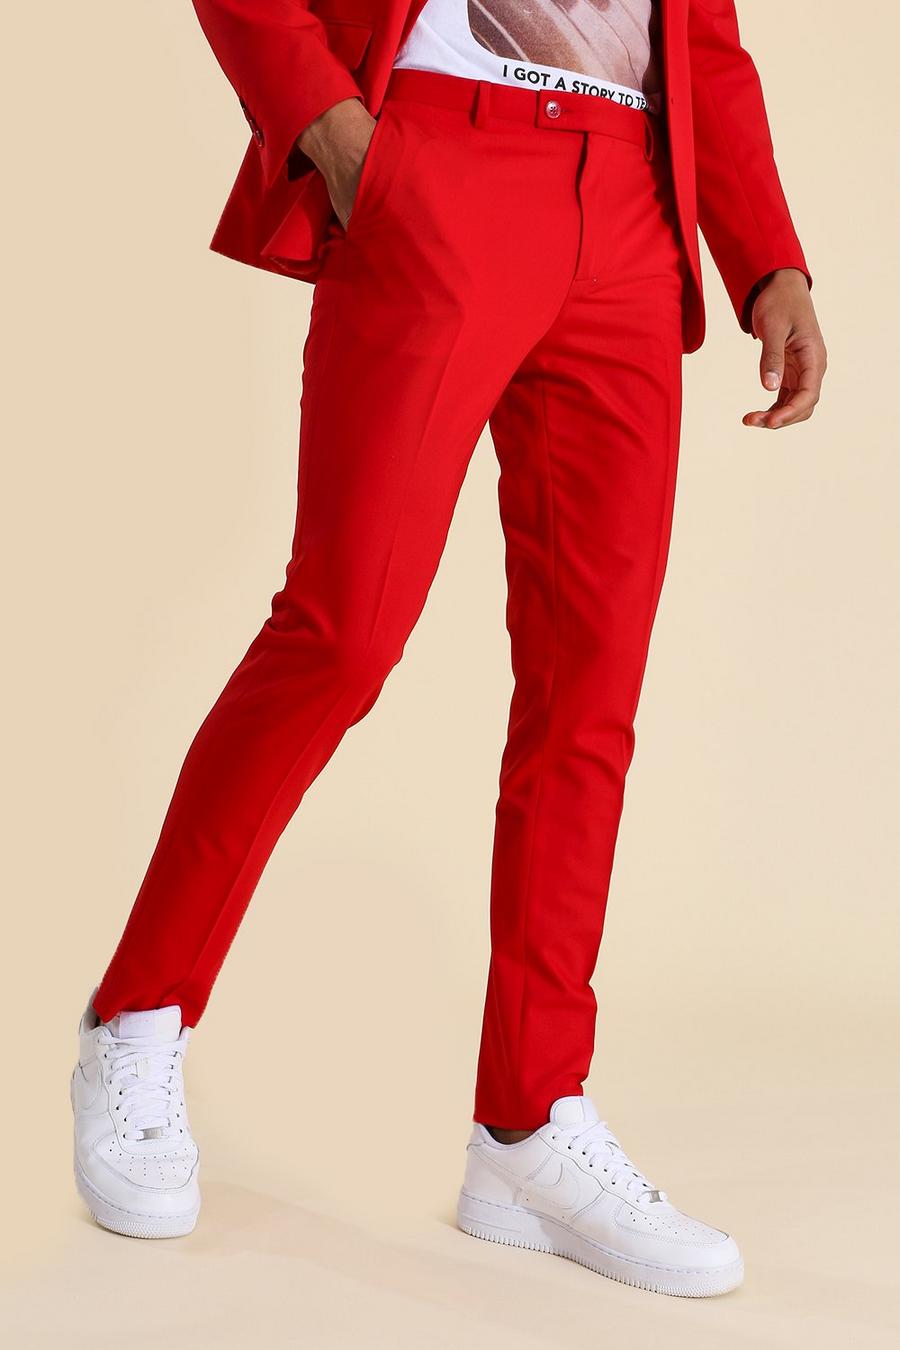 Pantaloni completo Skinny Fit rossi, Rosso rojo